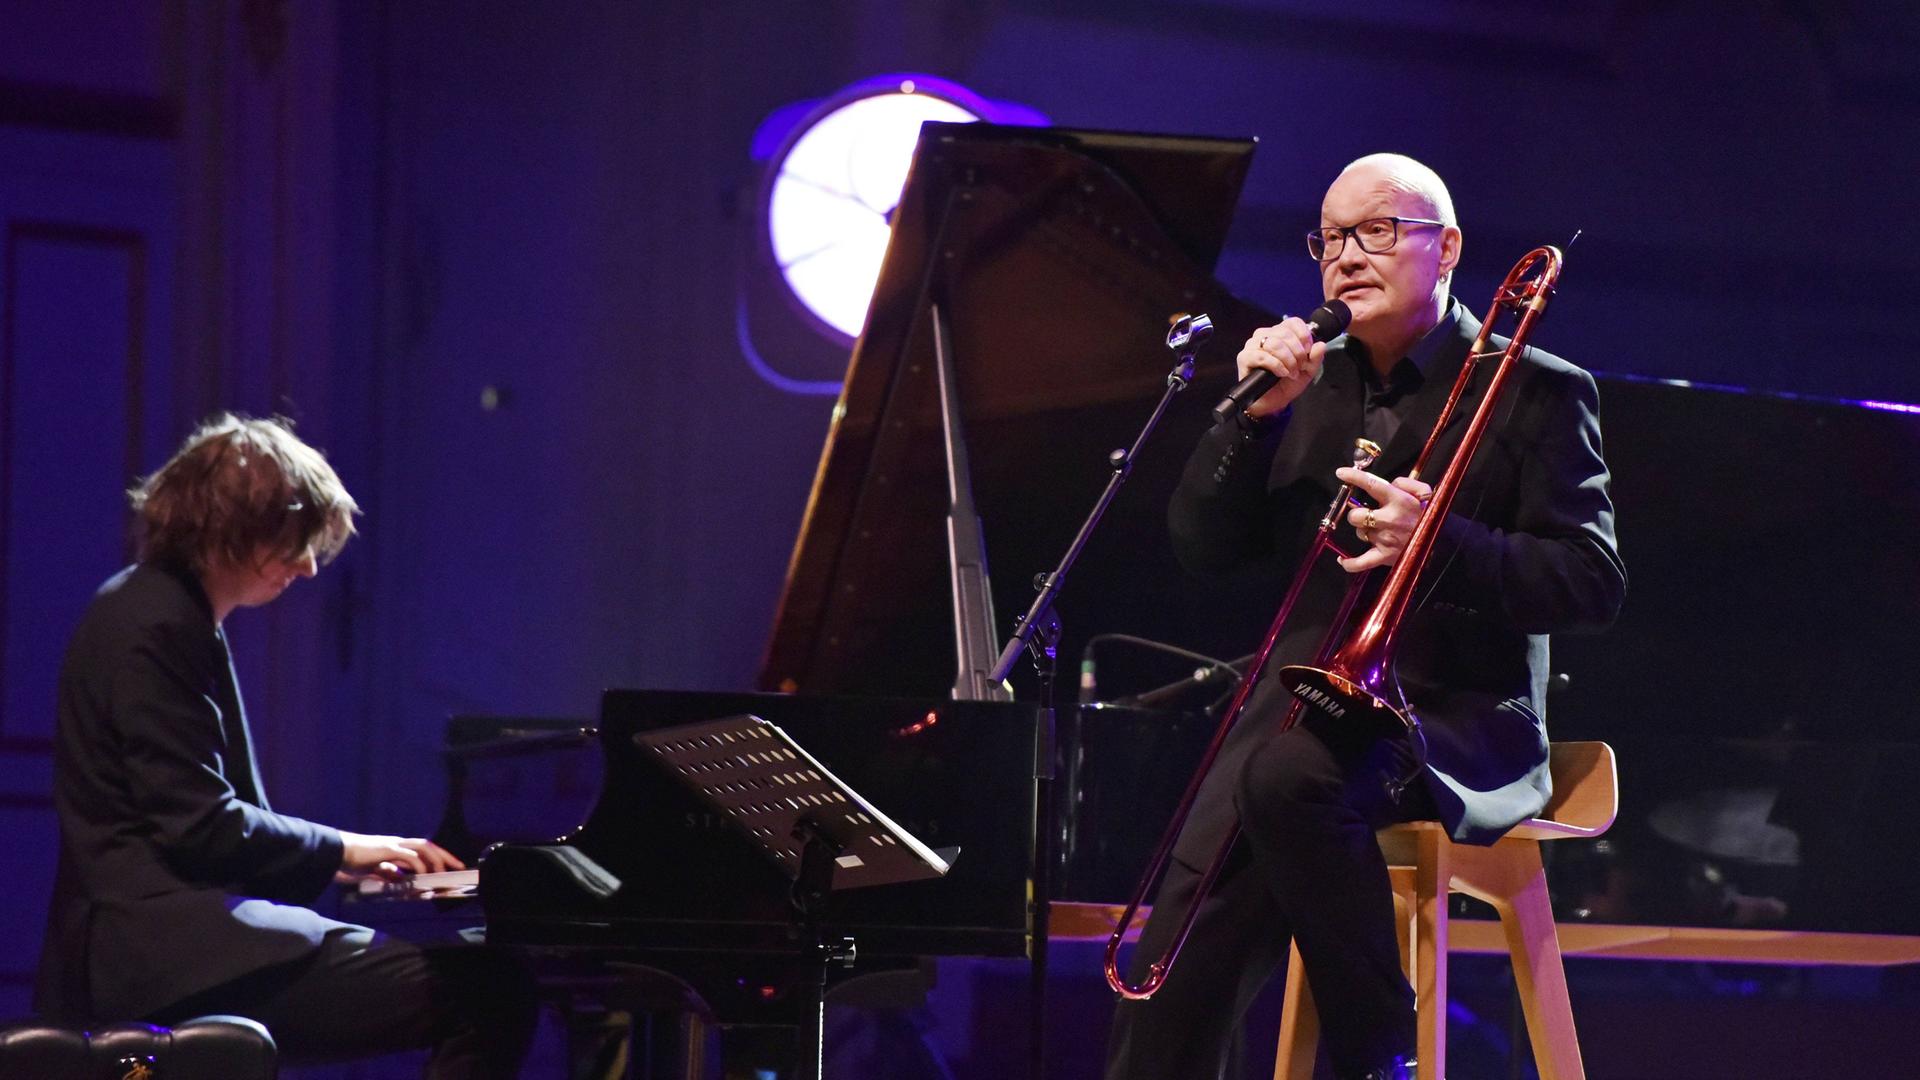 Michael Wollny begleitet Nils Landgren (Posaune) am Klavier auf einer rot-blau ausgeleuchteten Bühne in Hamburg im Jahr 2019. 